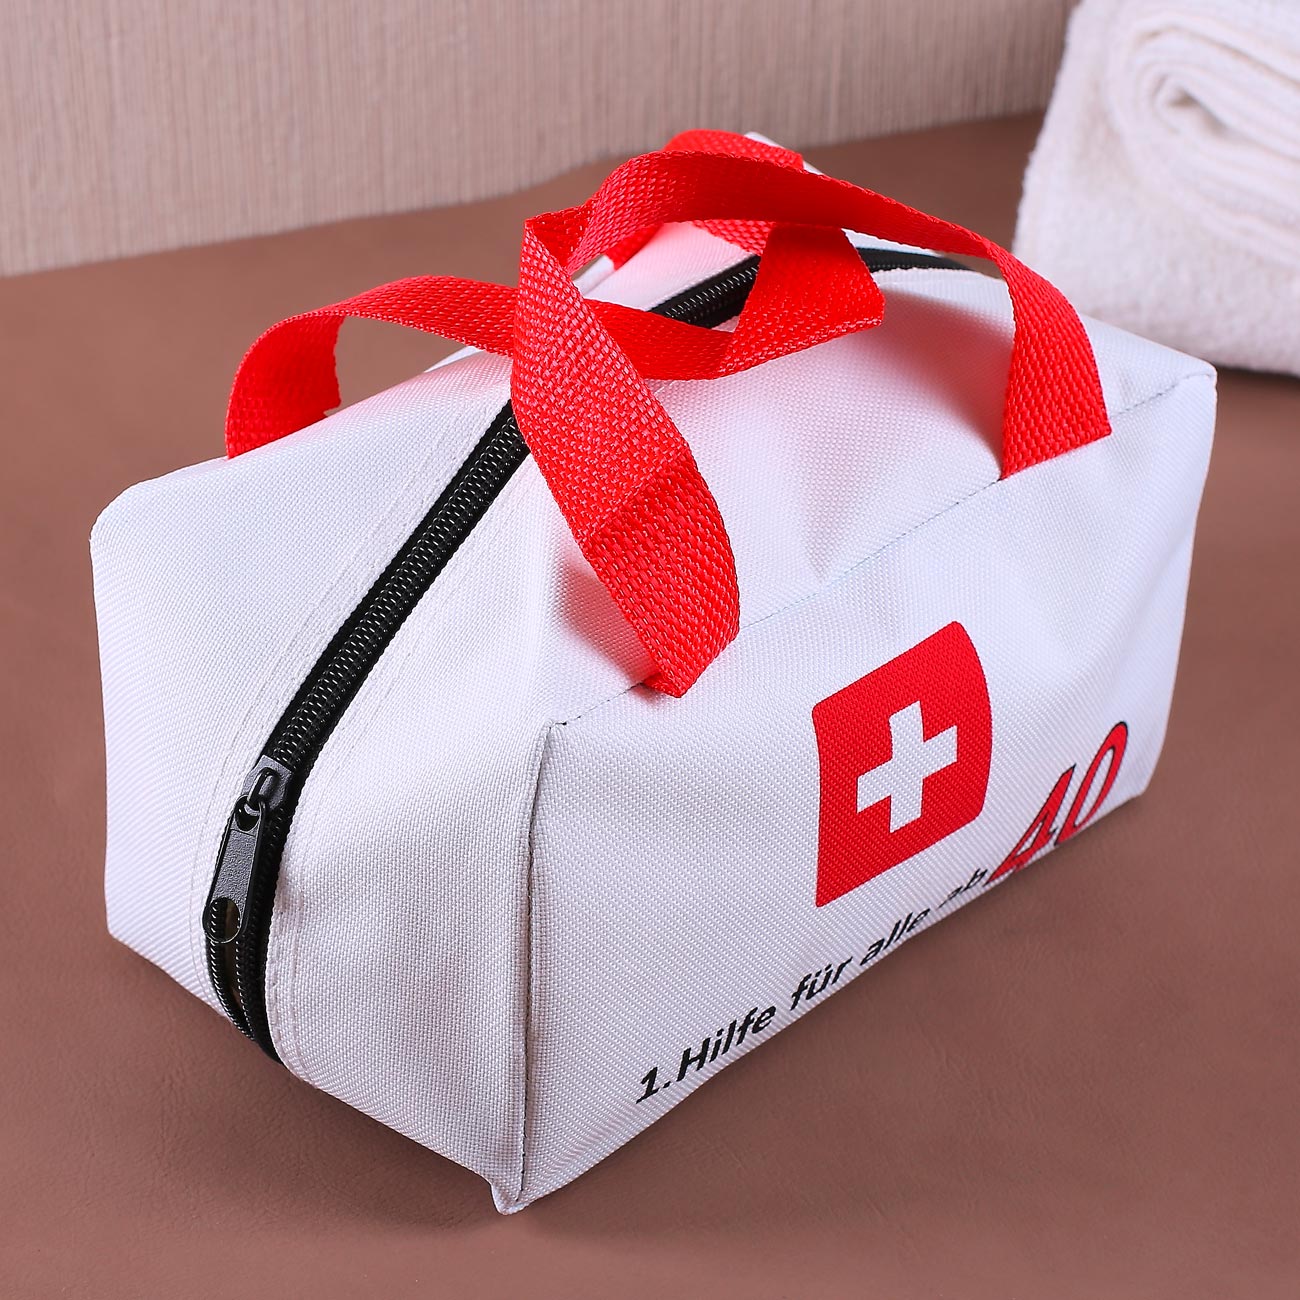 Erste-Hilfe-Tasche zum 18. Geburtstag - originelles Geschenk zum Befüllen